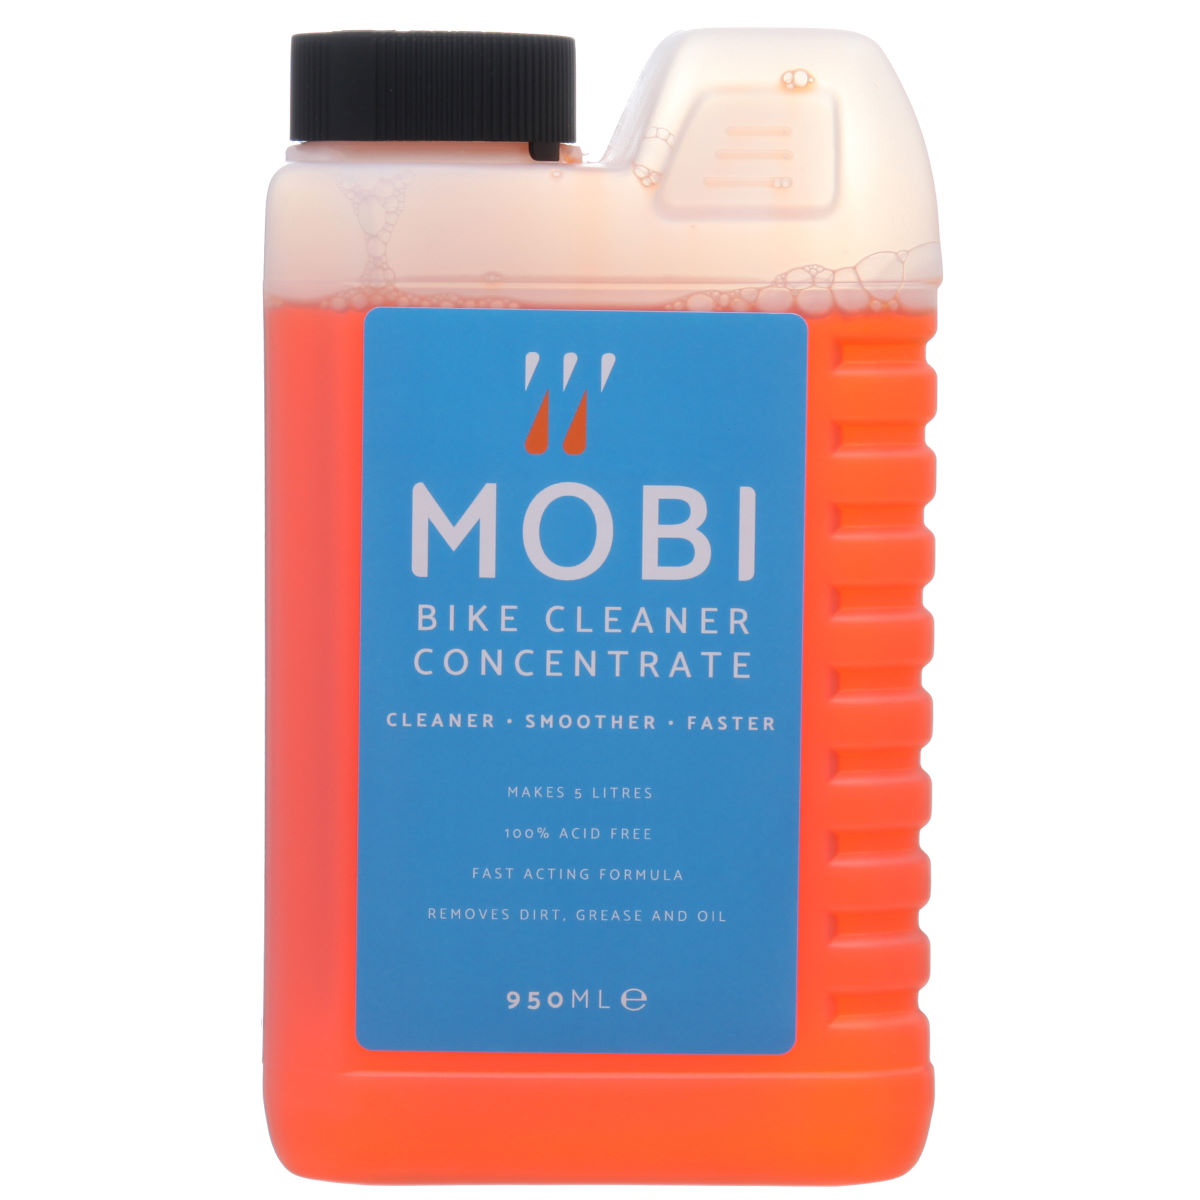 Limpiador concentrado de bicicletas Mobi (950ml) - Productos de limpieza